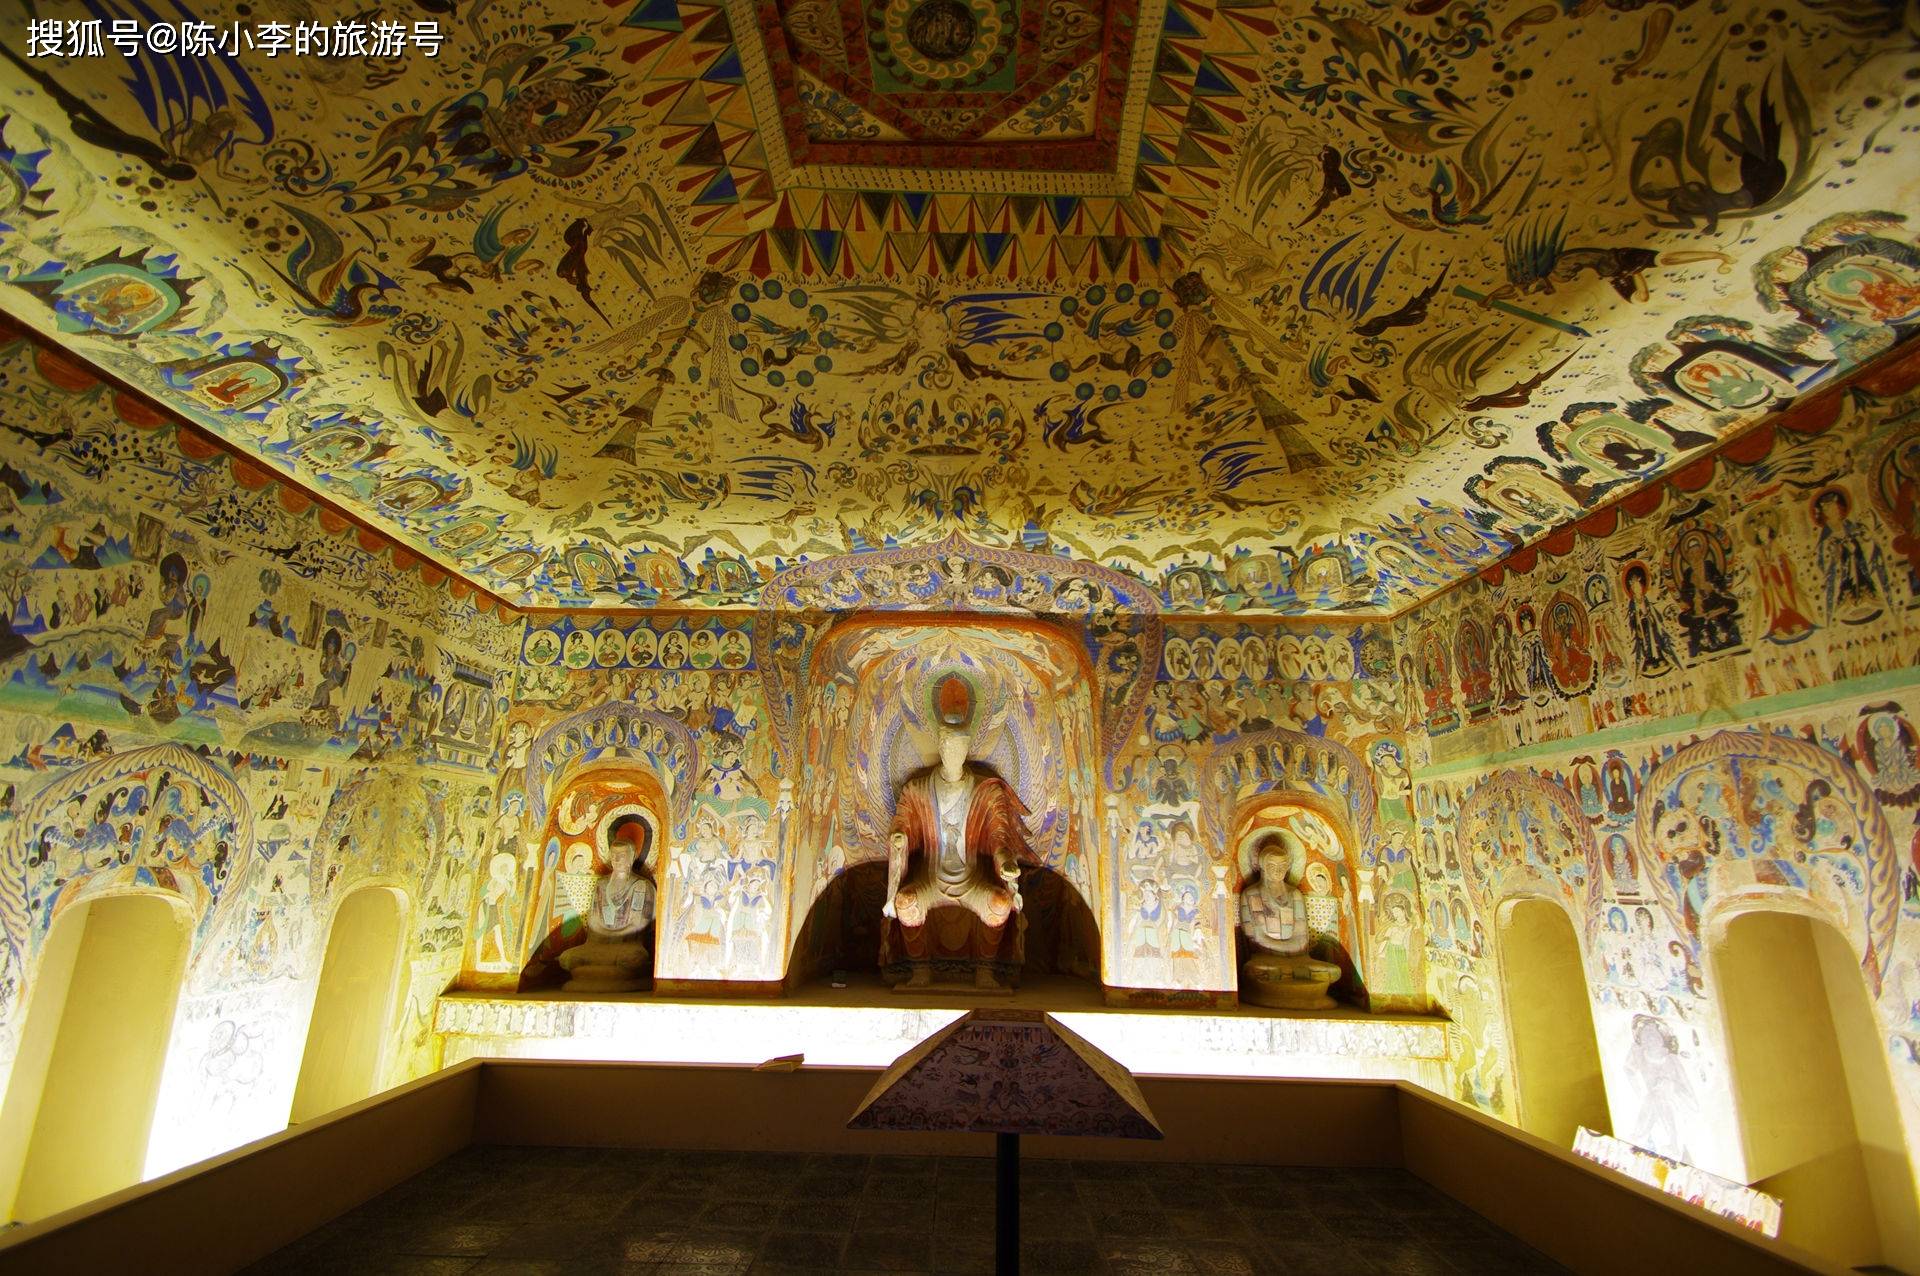 中国四大石窟之一,敦煌莫高窟,世界文化遗产,人类的艺术殿堂 !